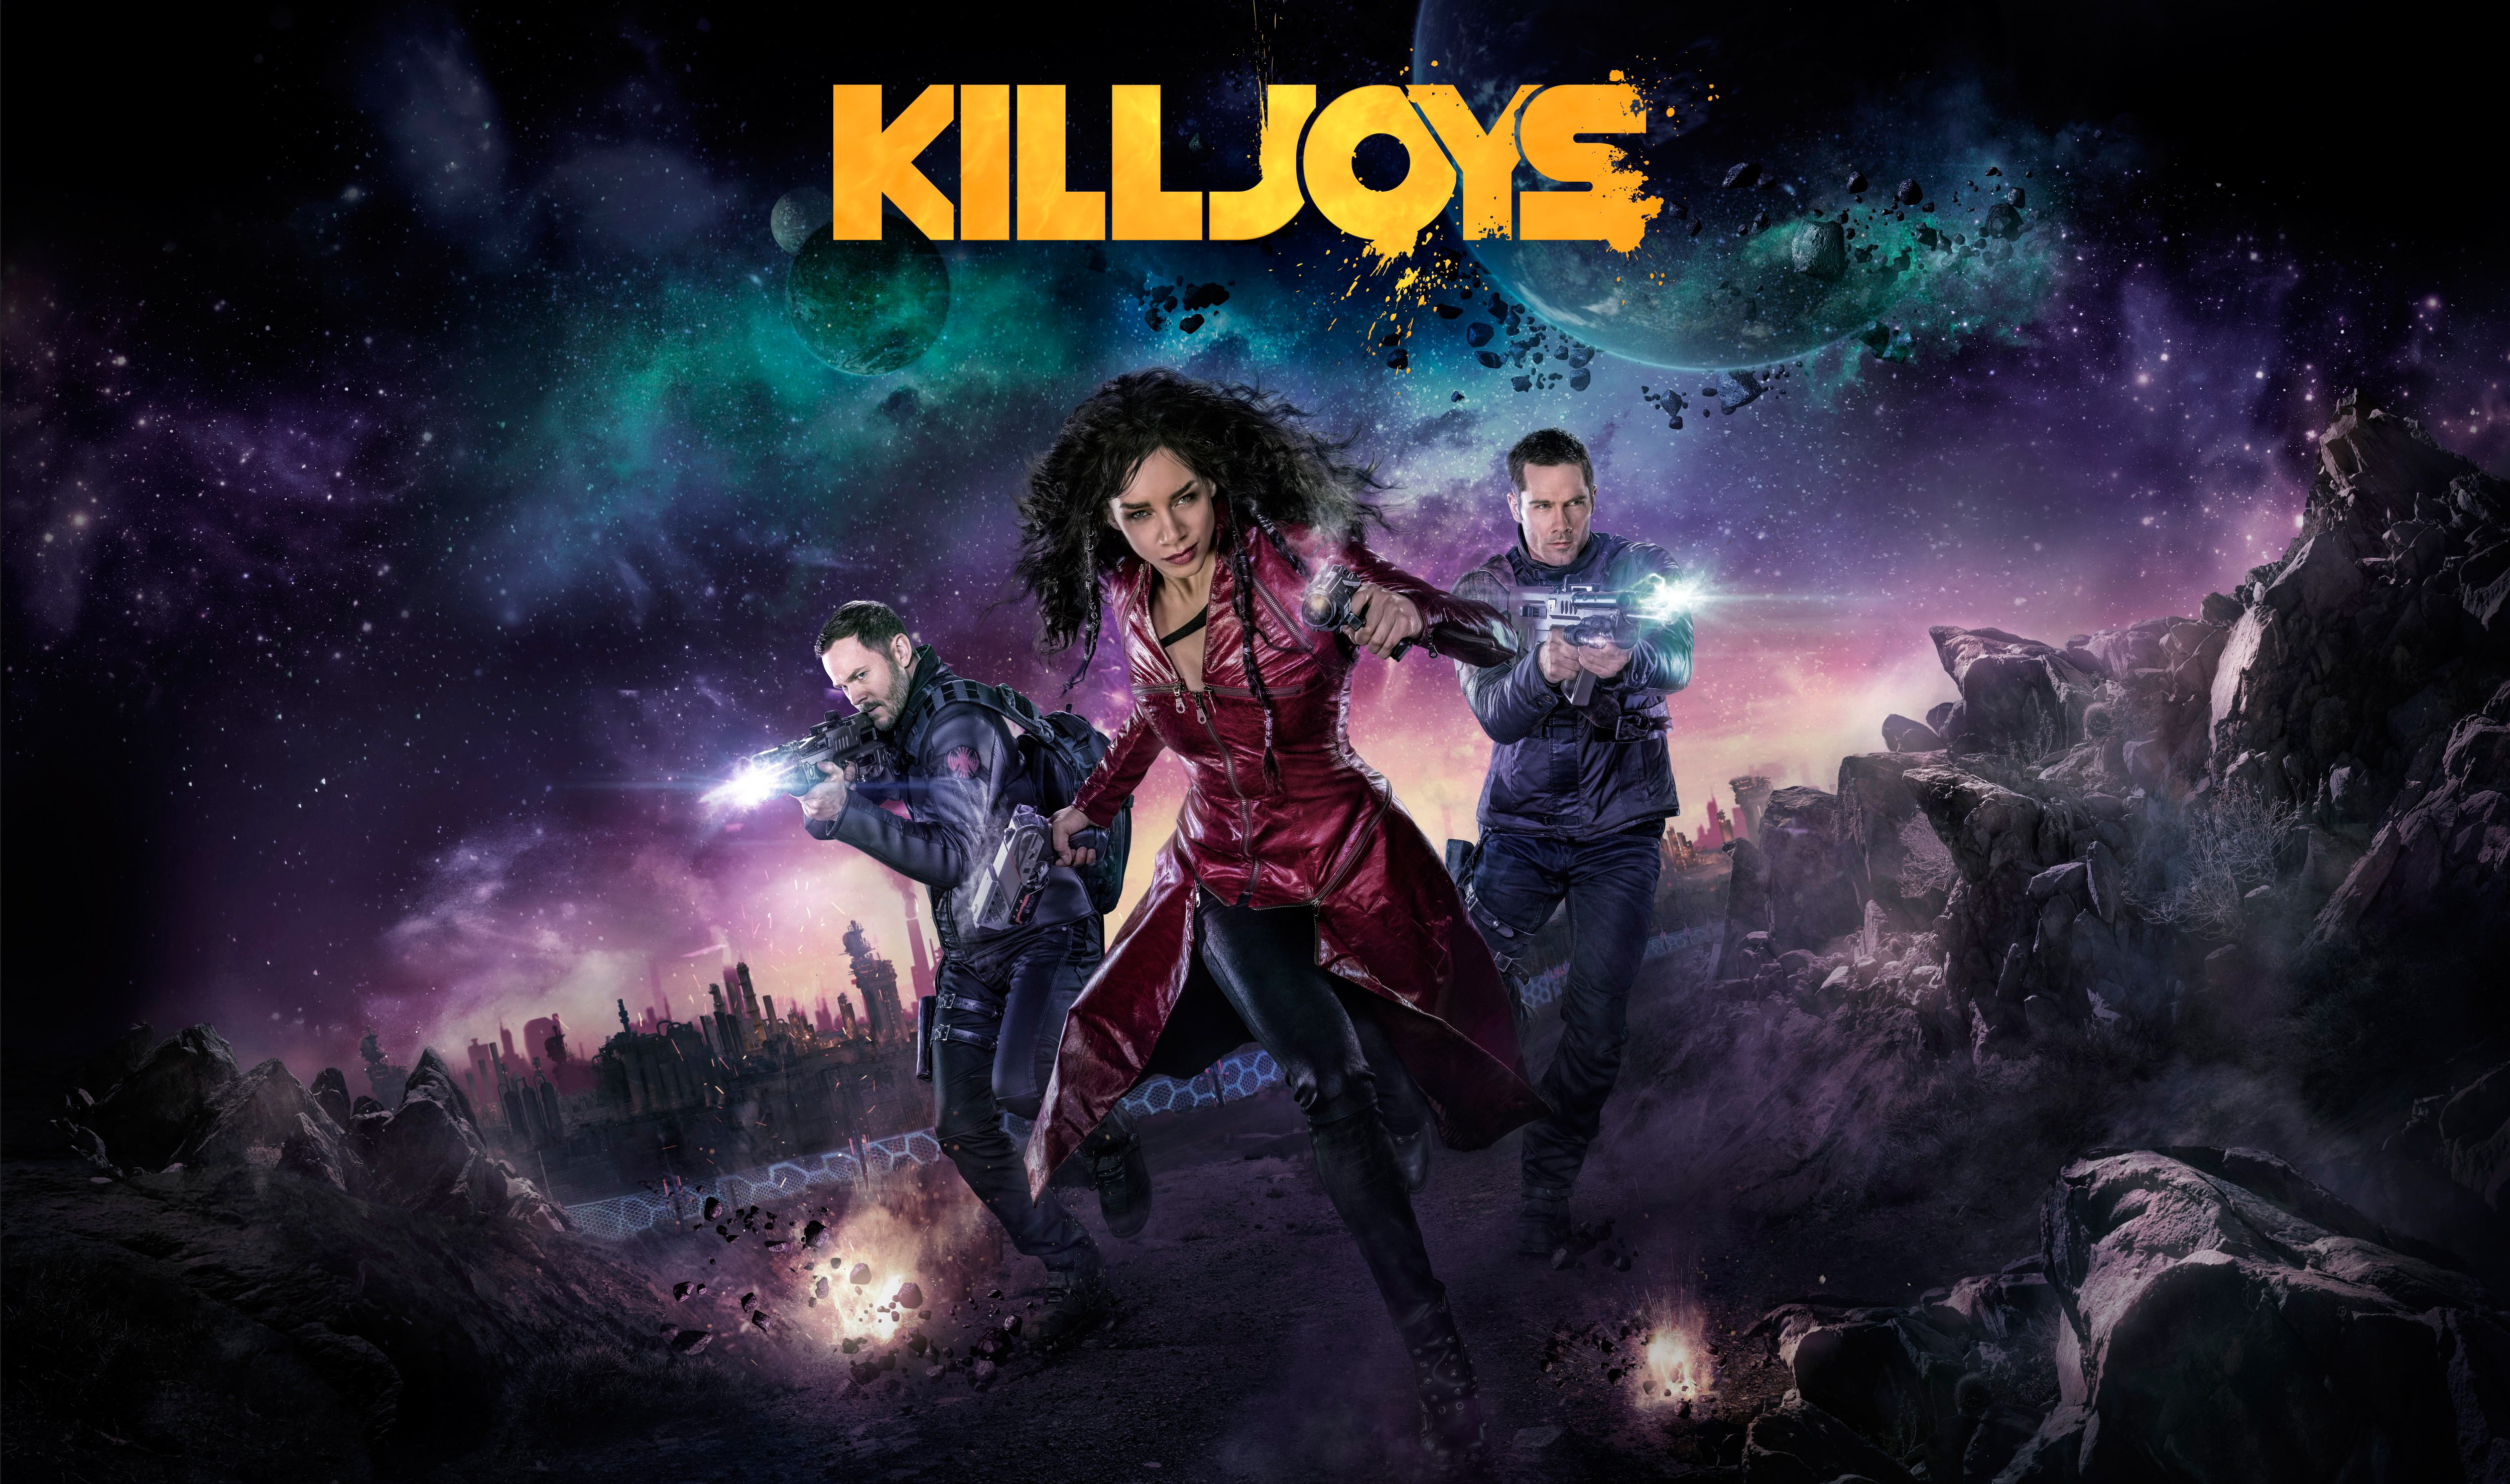 Killjoys movie poster, Canadian, Space Adventure